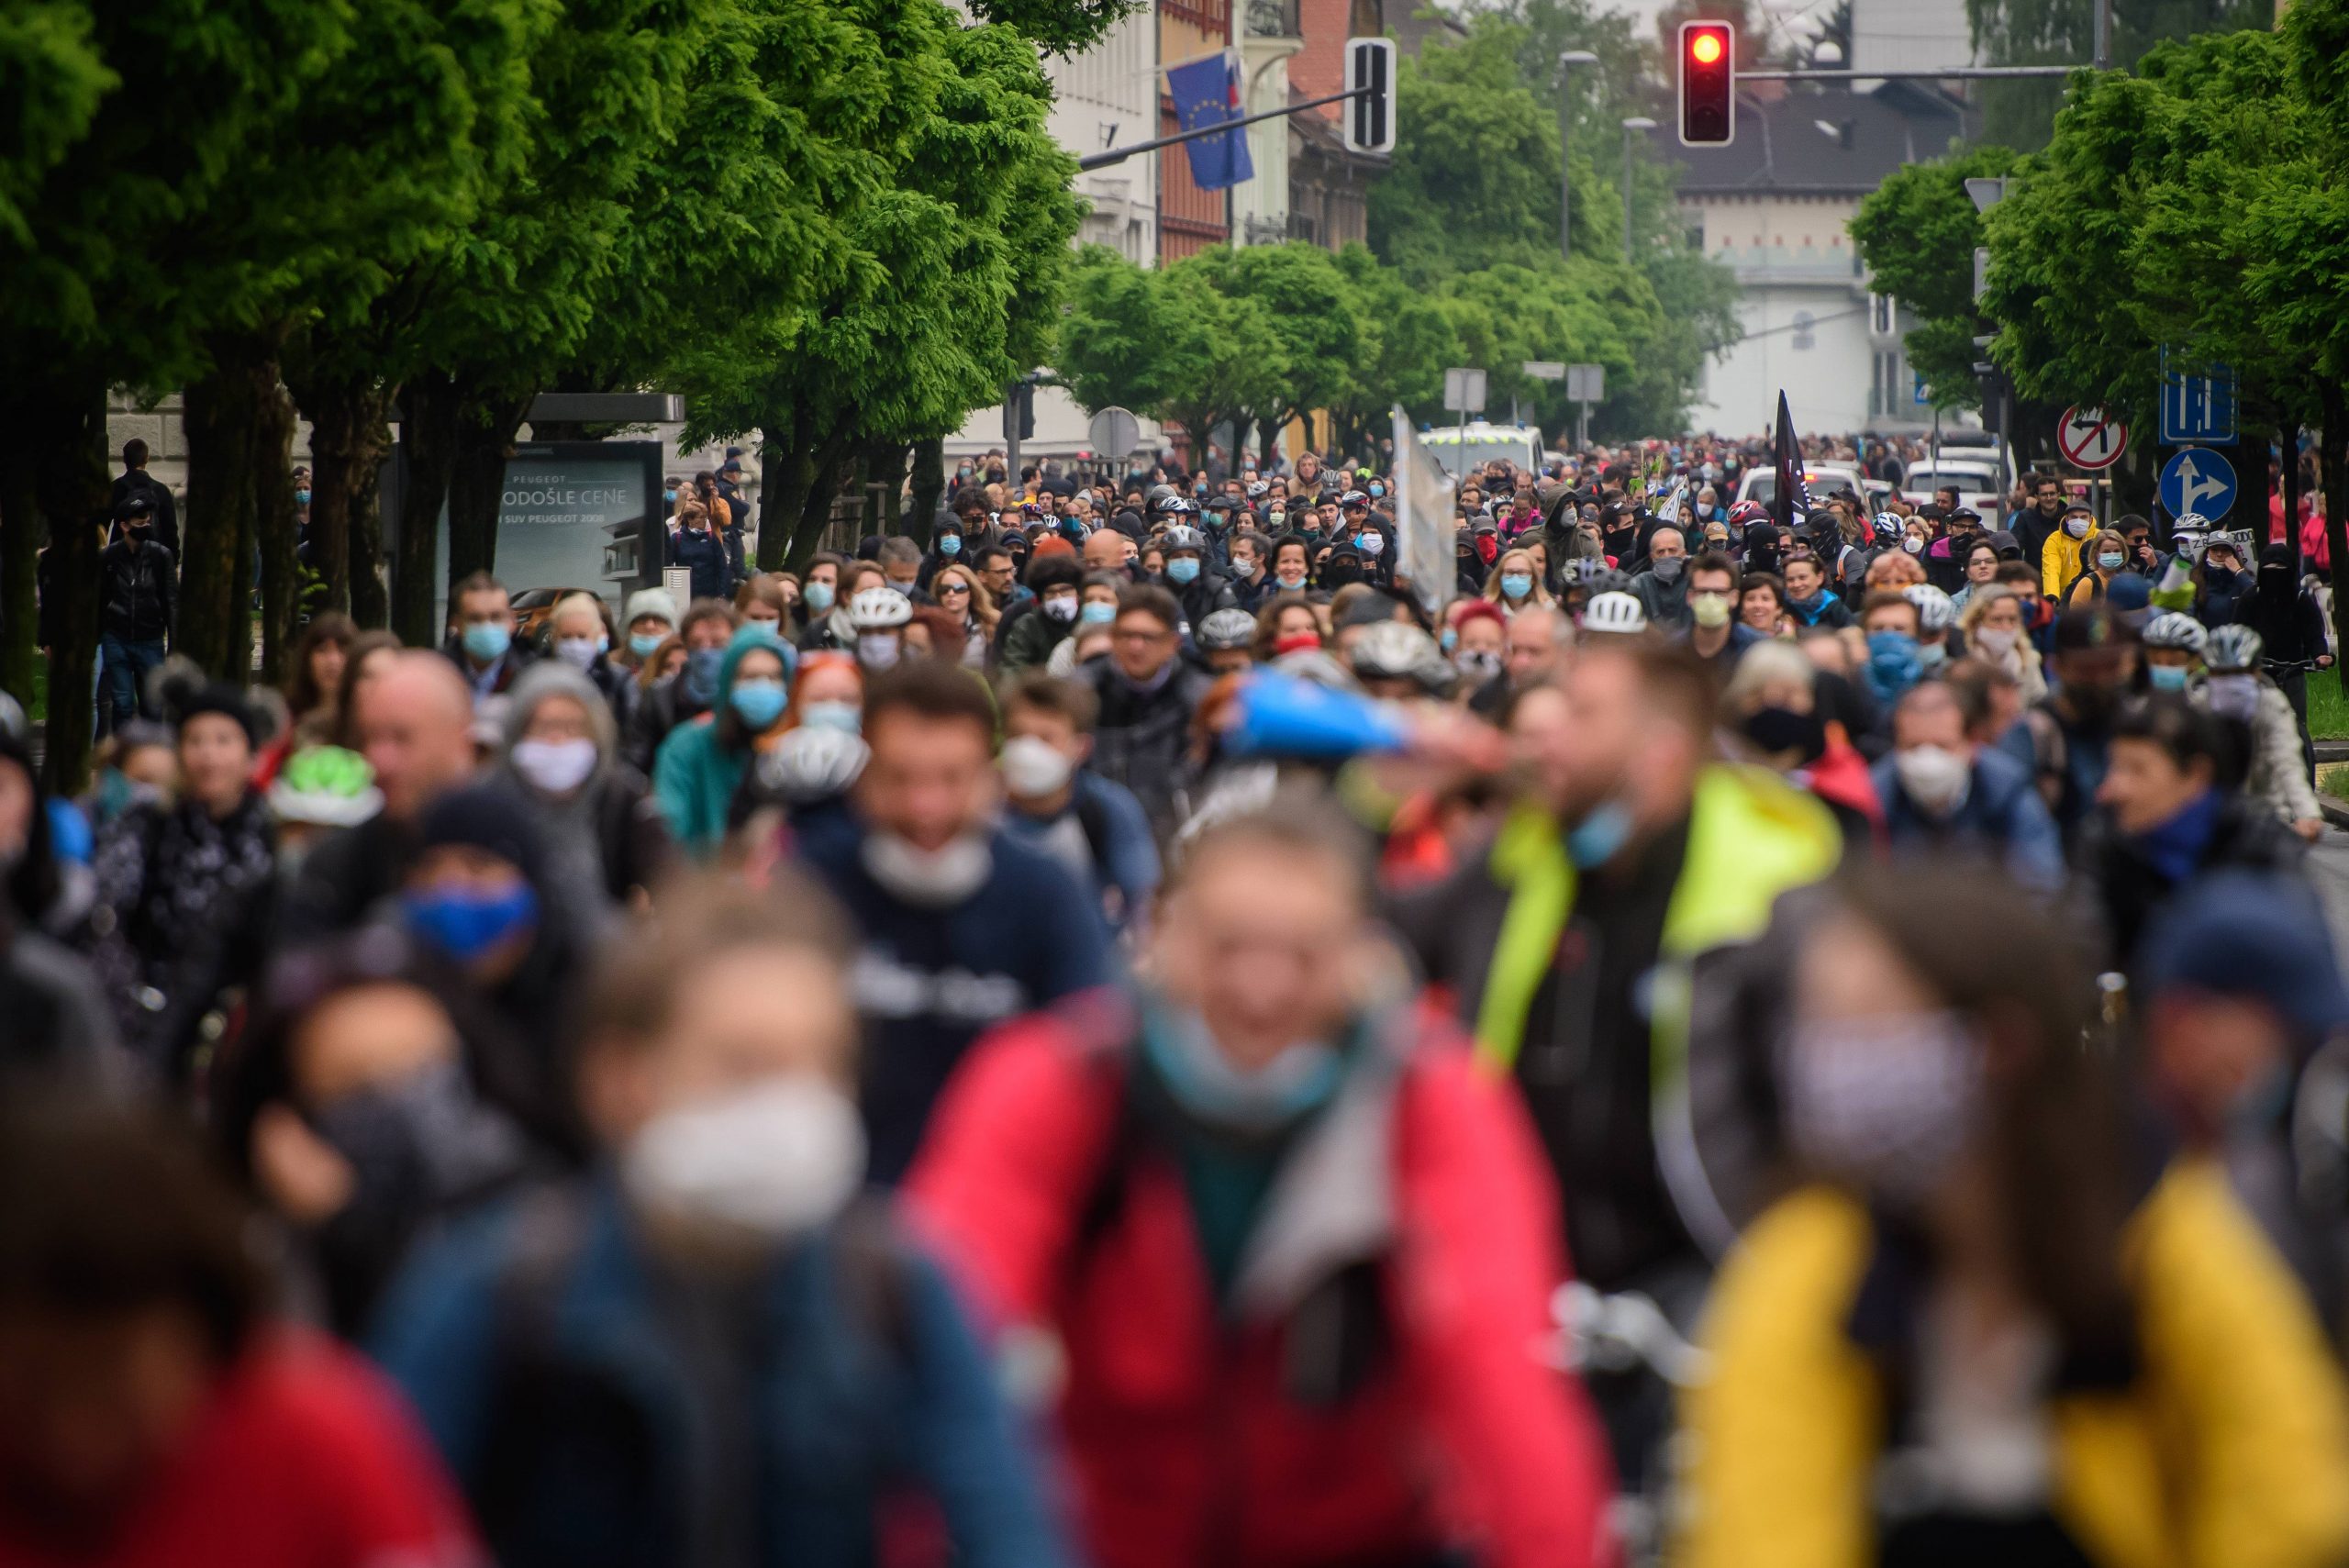 Hiljade biciklista protestovali protiv vlade u Sloveniji 1